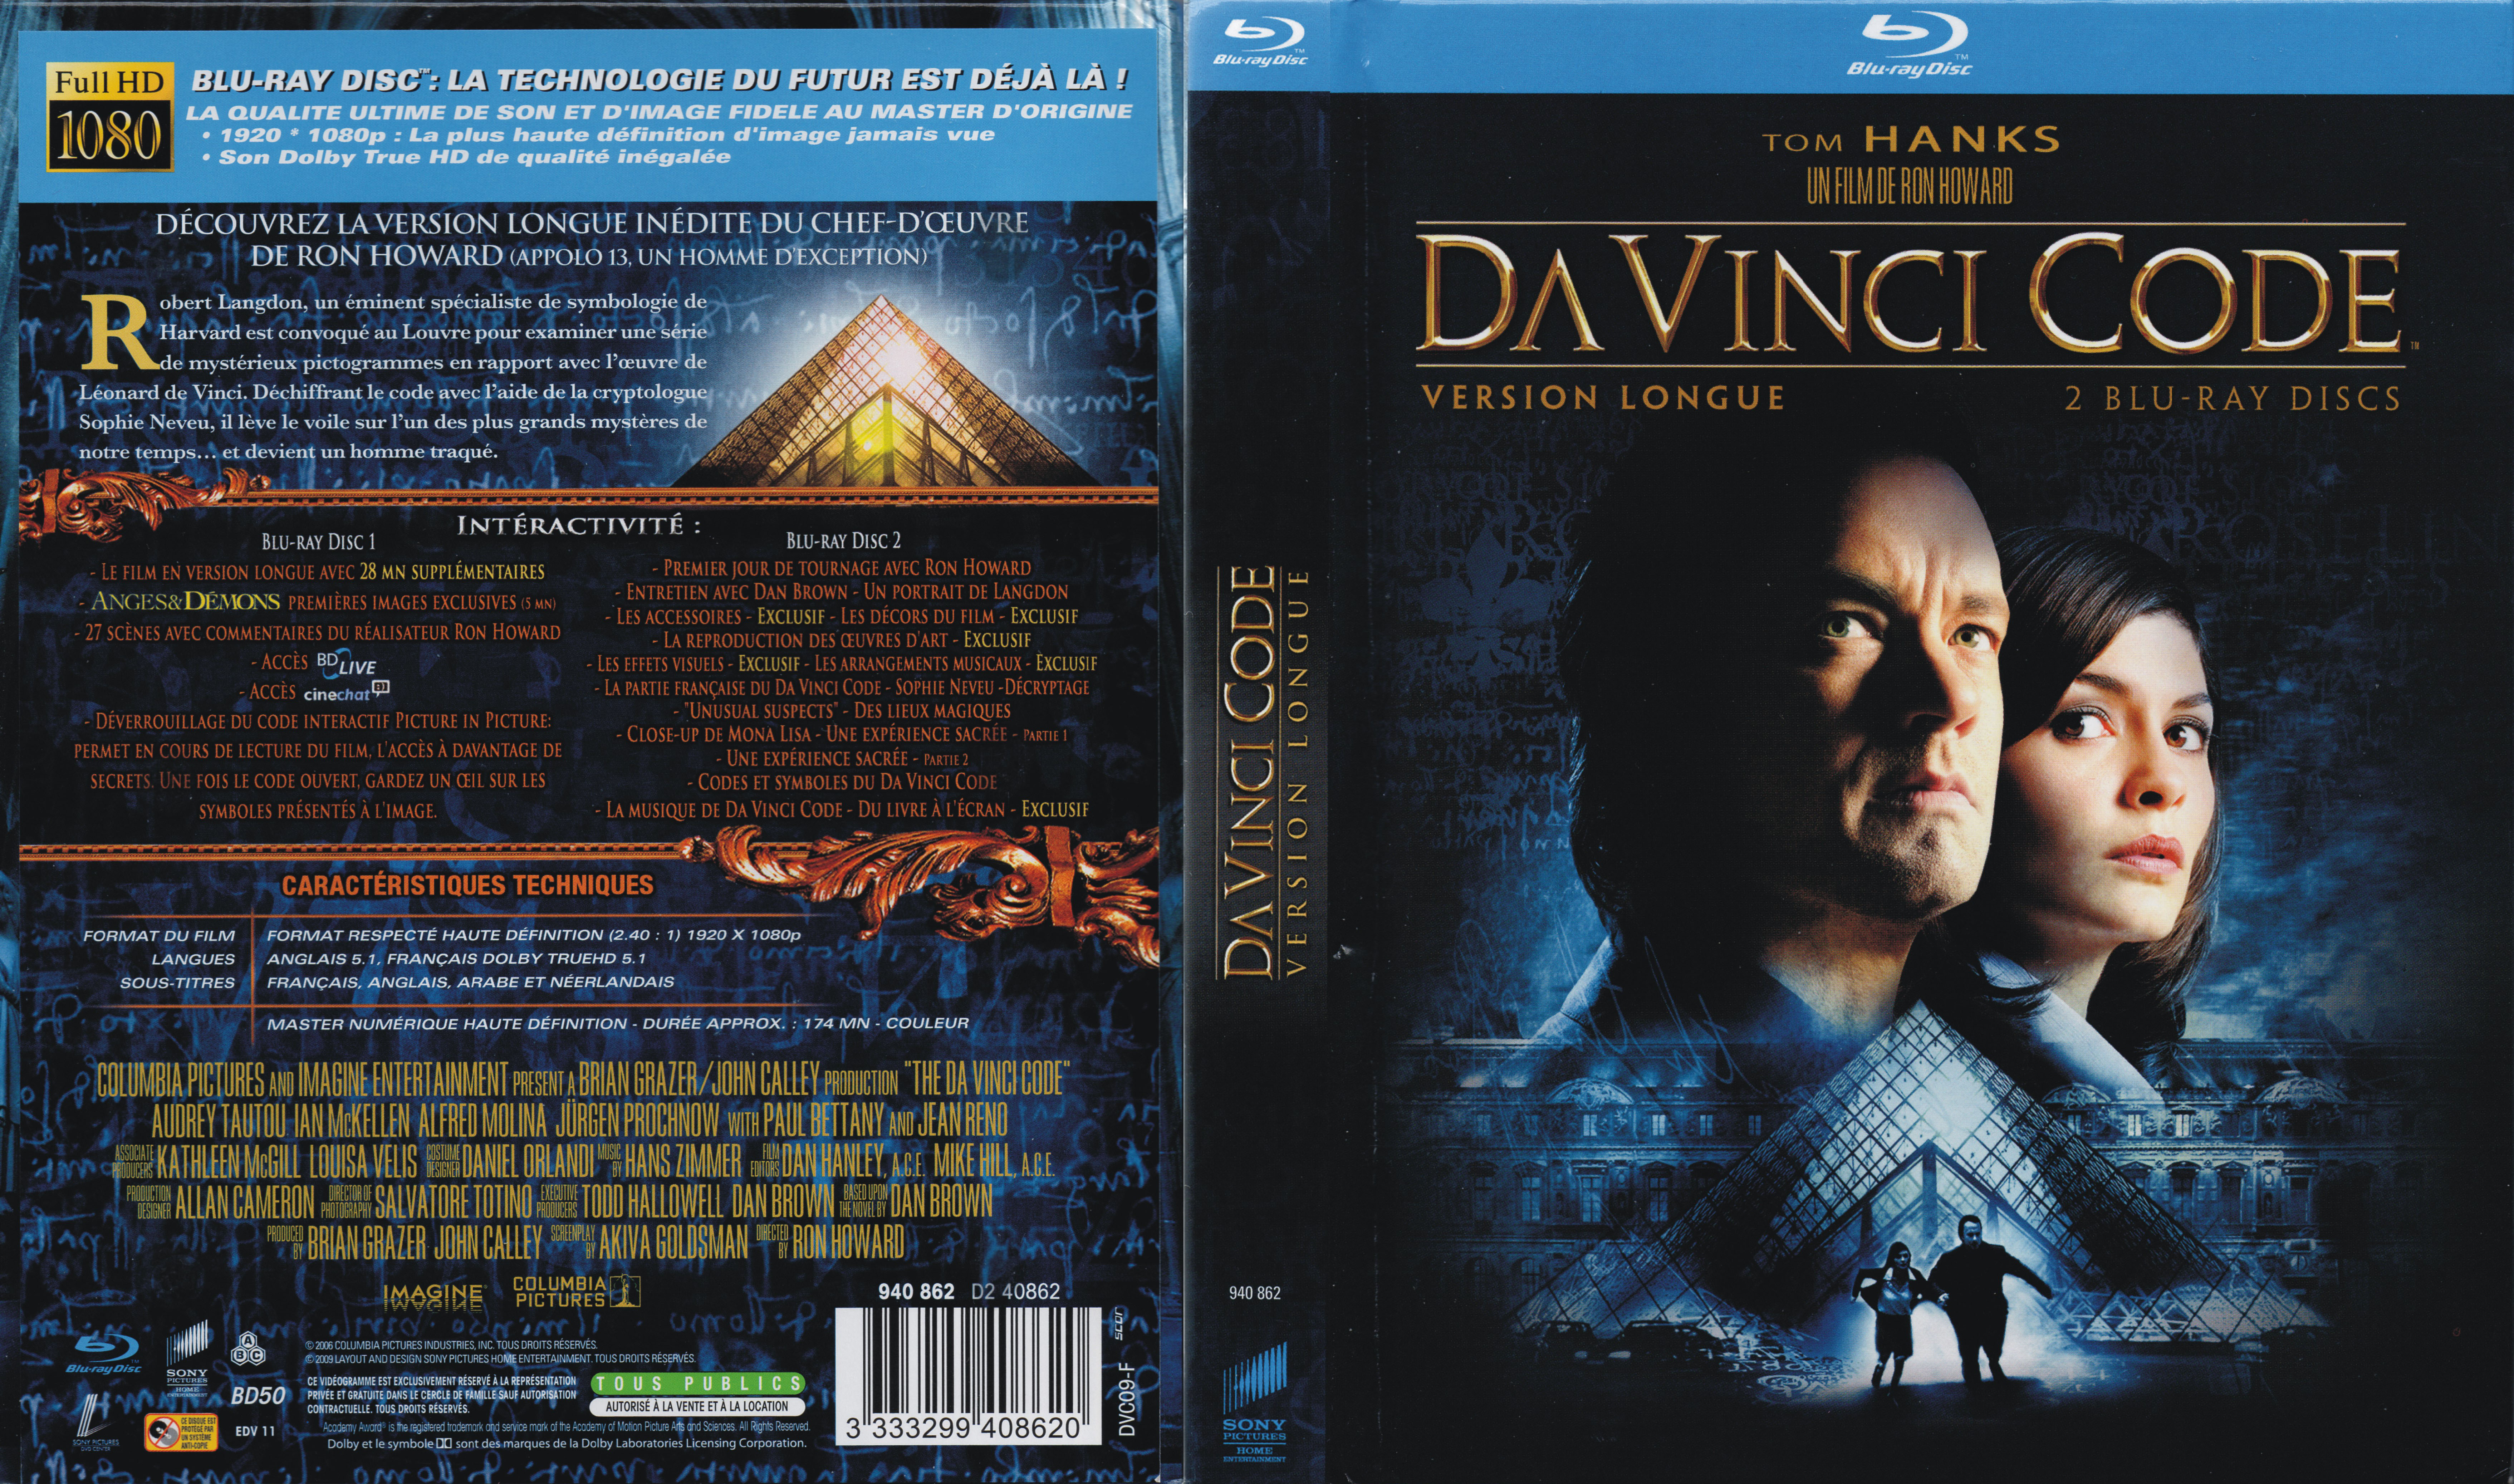 Jaquette DVD Da Vinci Code (BLU-RAY) v2